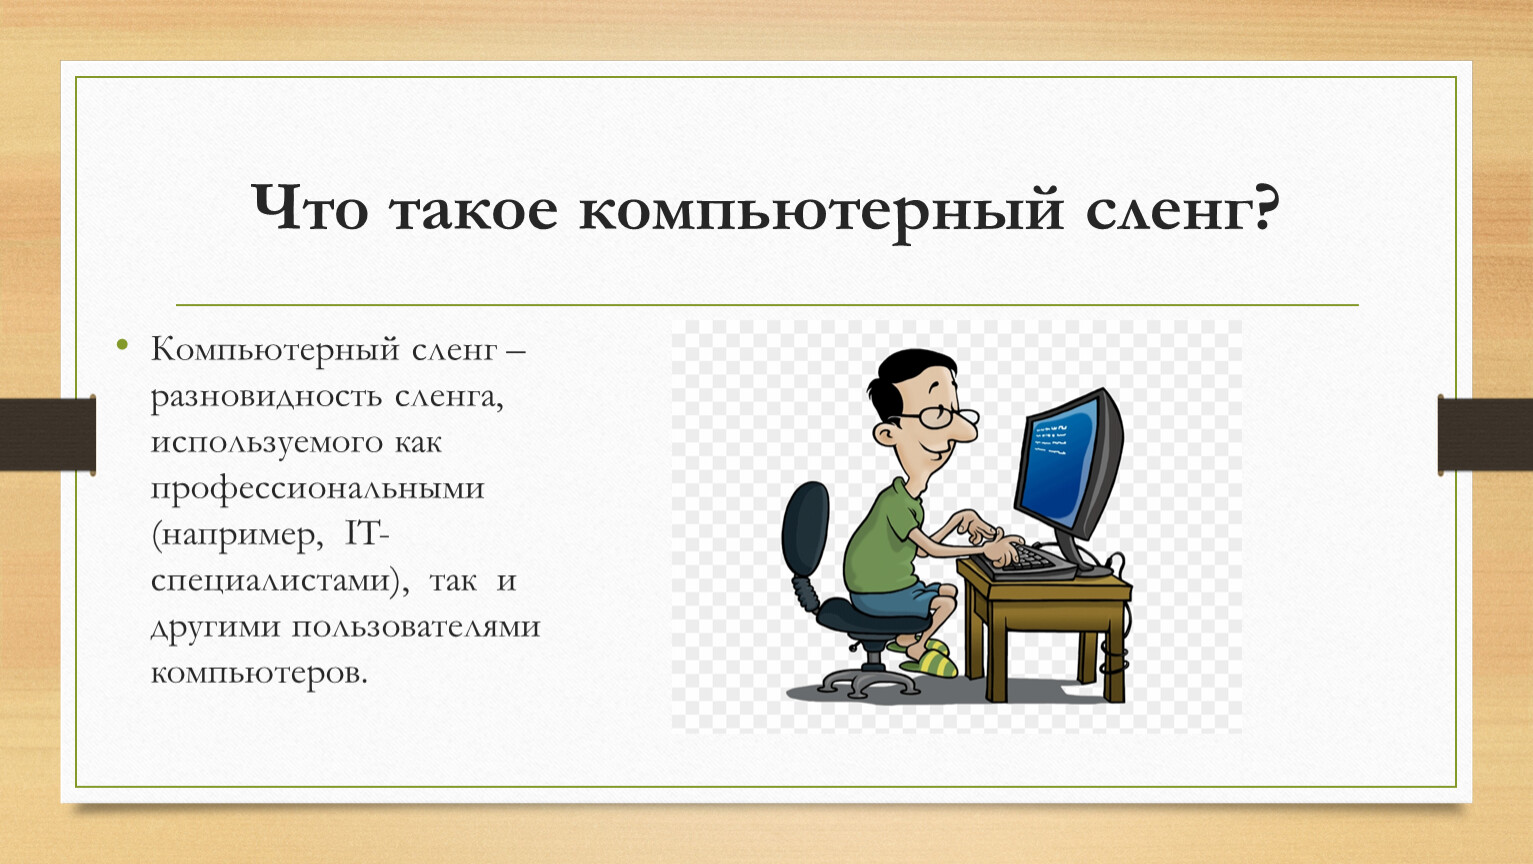 Компьютерный жаргон в русском. Компьютерный сленг презентация. Профессиональные жаргоны компьютерщиков. Компьютерный сленг картинки. Компьютерная лексика и сленг.